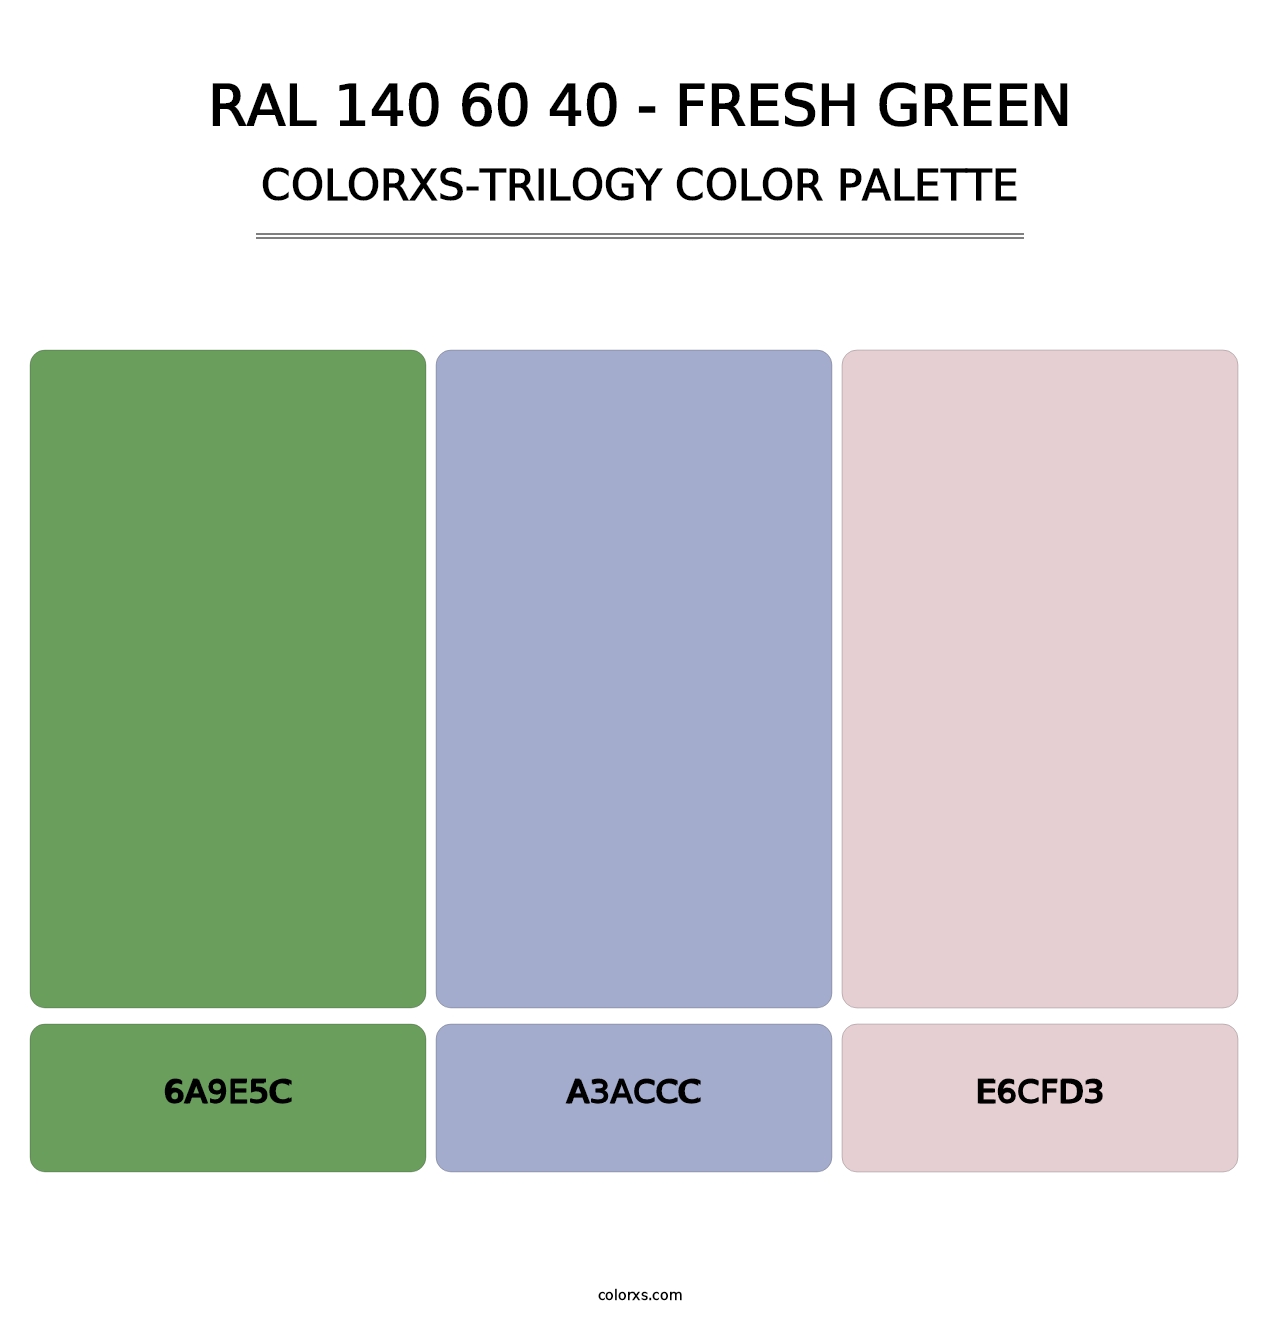 RAL 140 60 40 - Fresh Green - Colorxs Trilogy Palette